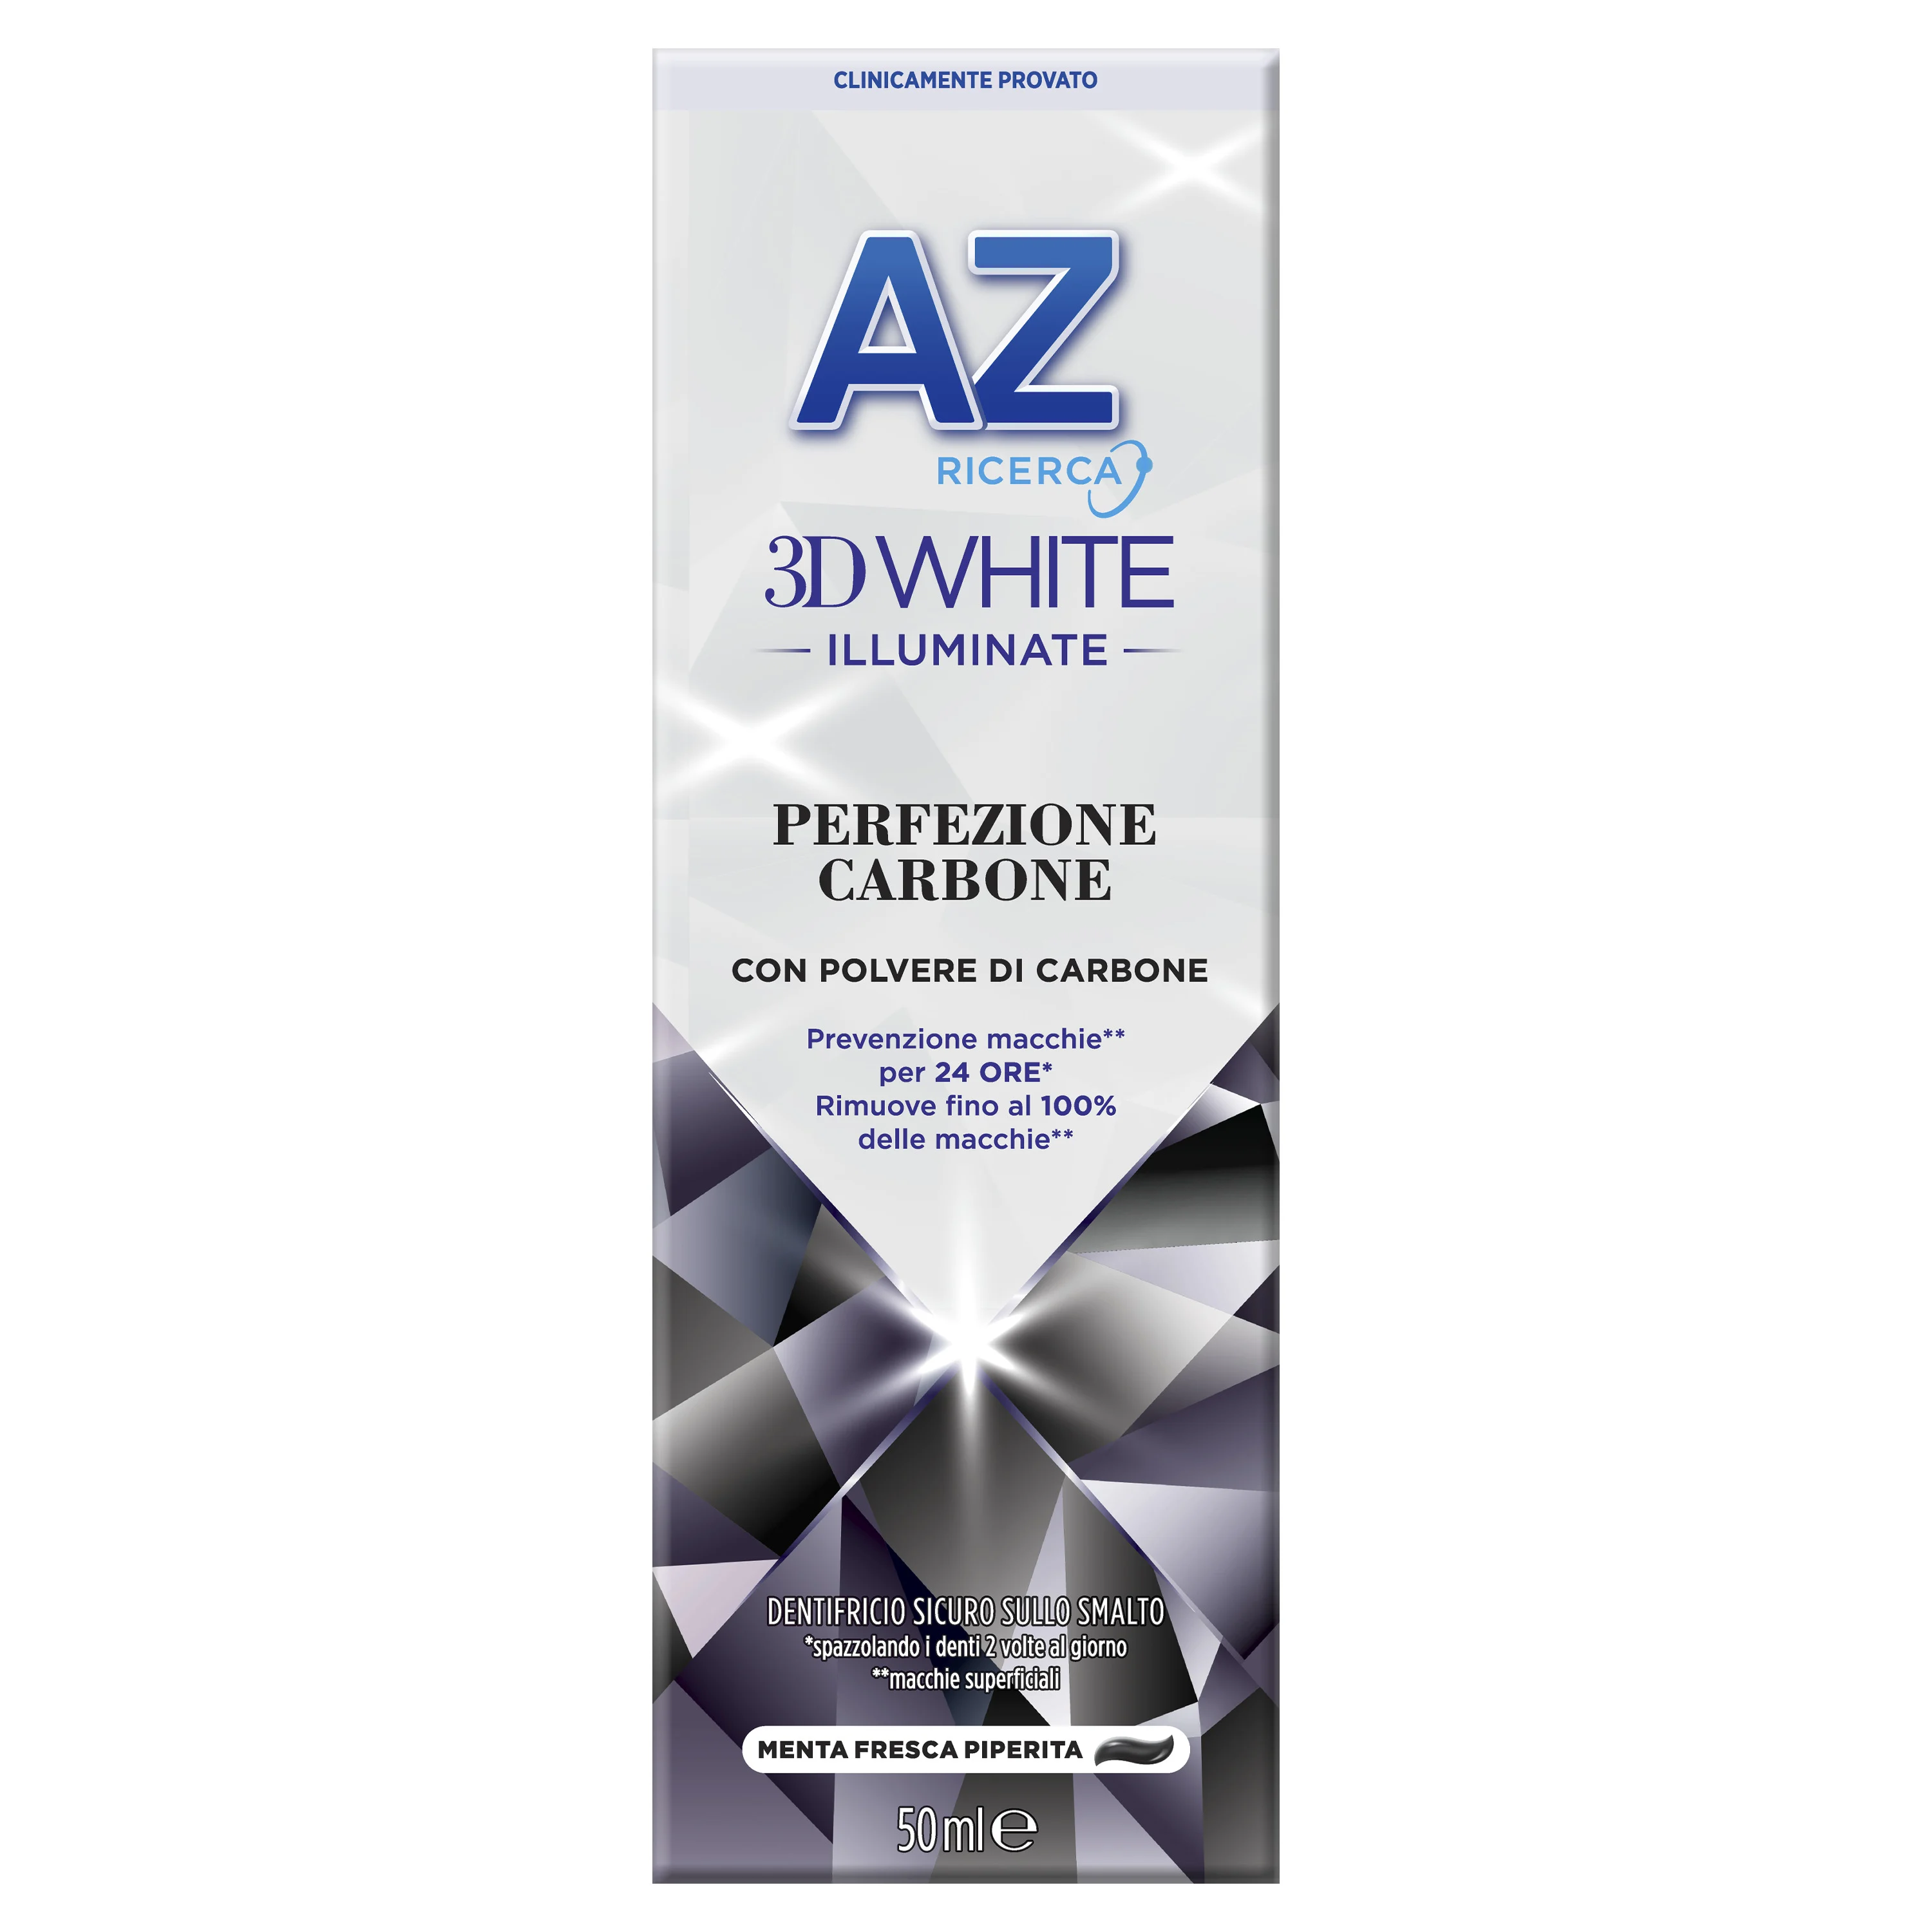 AZ Dentifricio 3DWhite Illuminate Perfezione Carbone - Main 